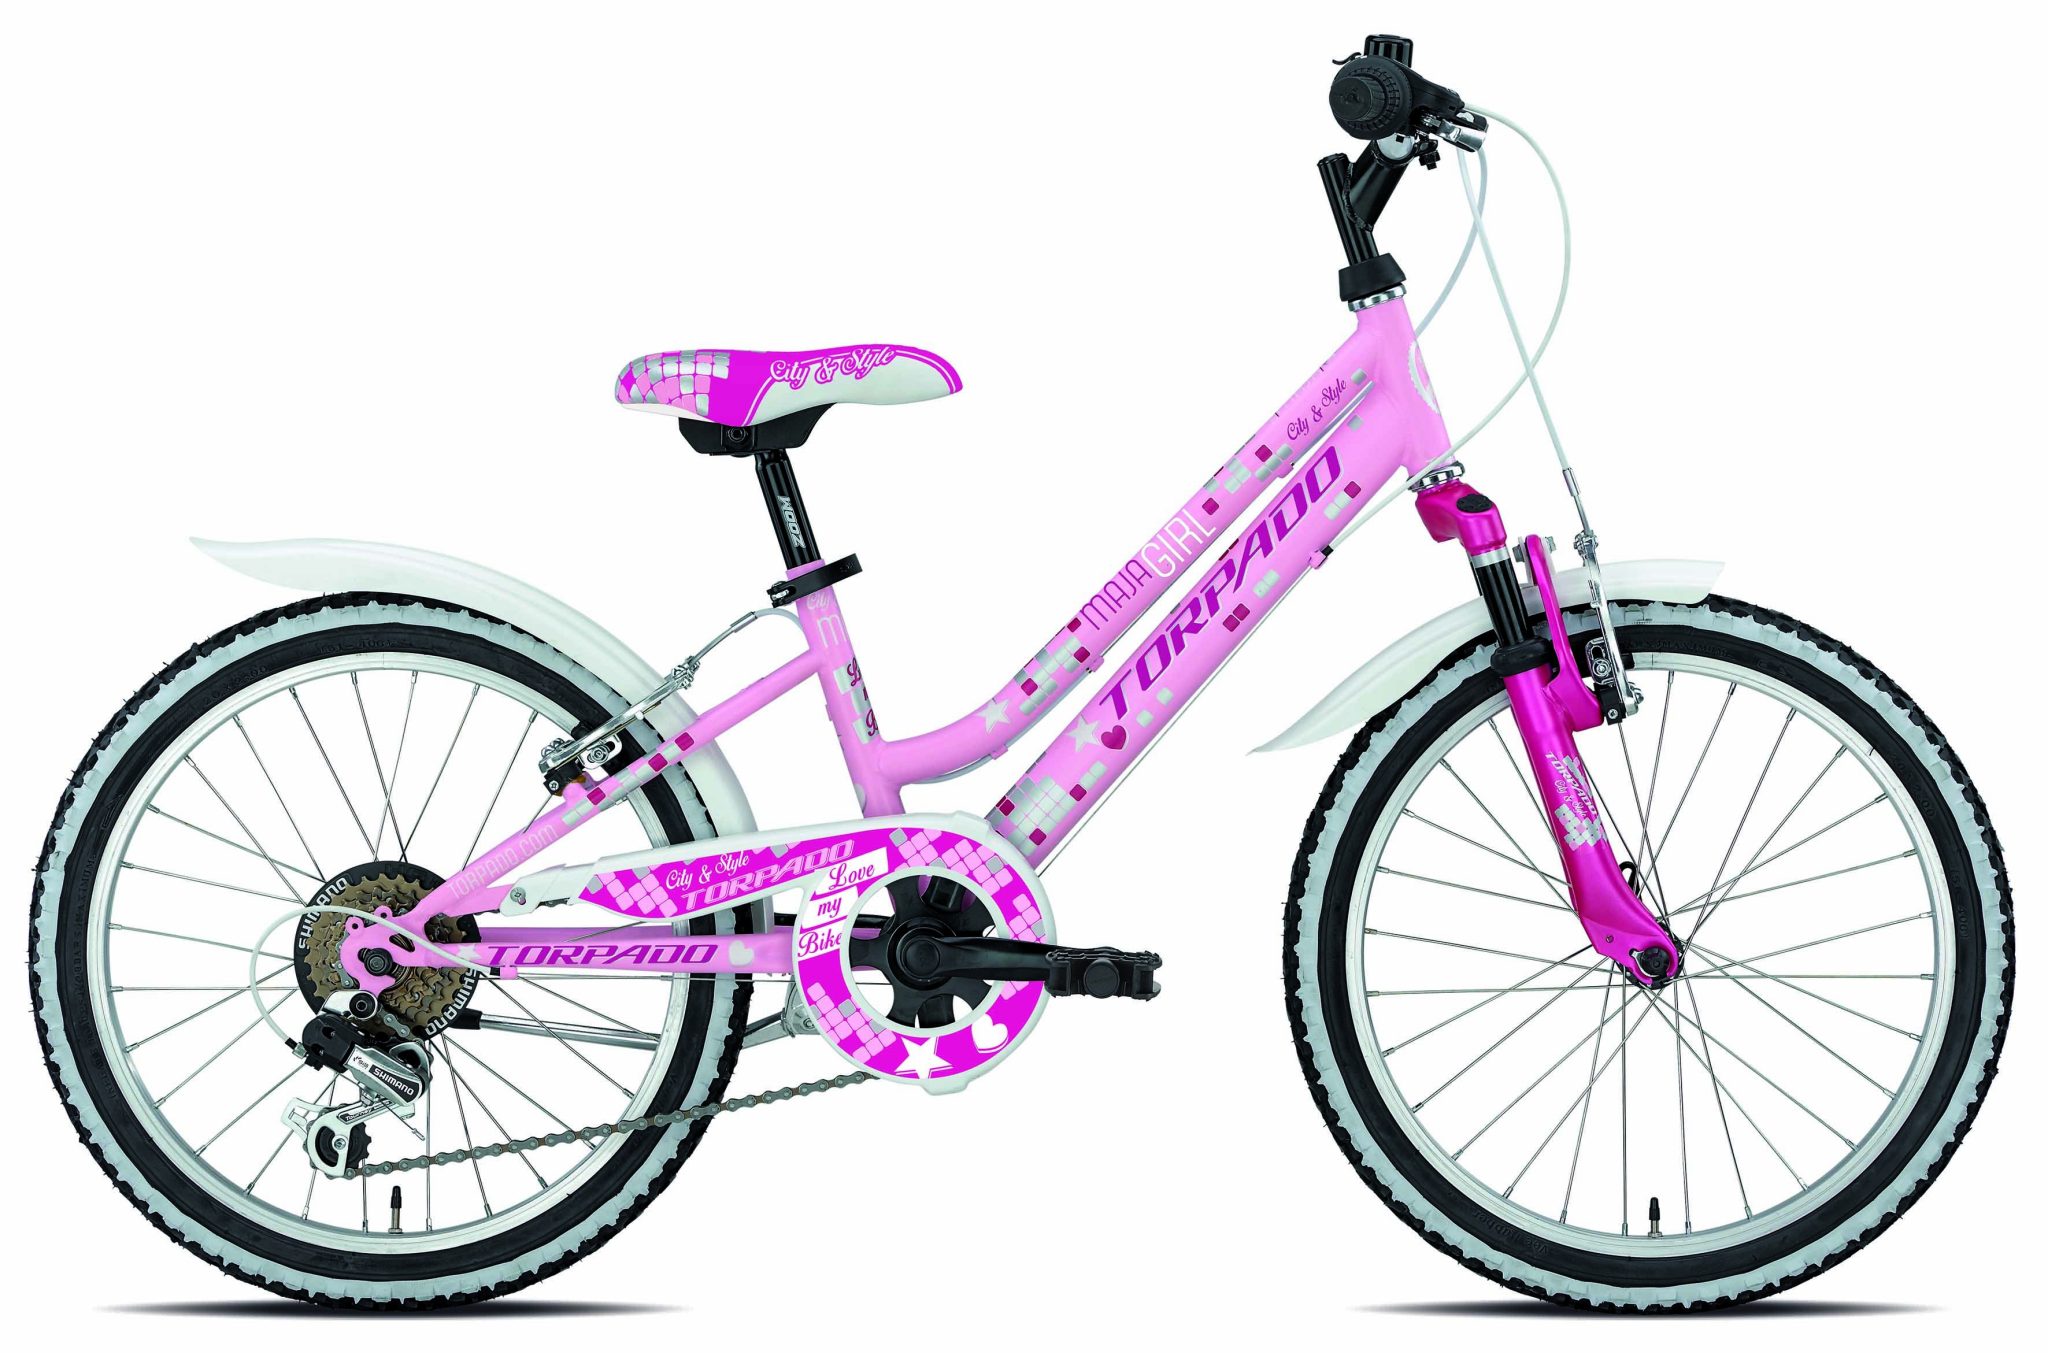 Велосипед для девочек купить авито. Велосипед стелс 24 дюйма для девочки. Стелс 24 дюйма для девочки. Велосипед stels для девочки 7-10. Велосипед stels для девочки.